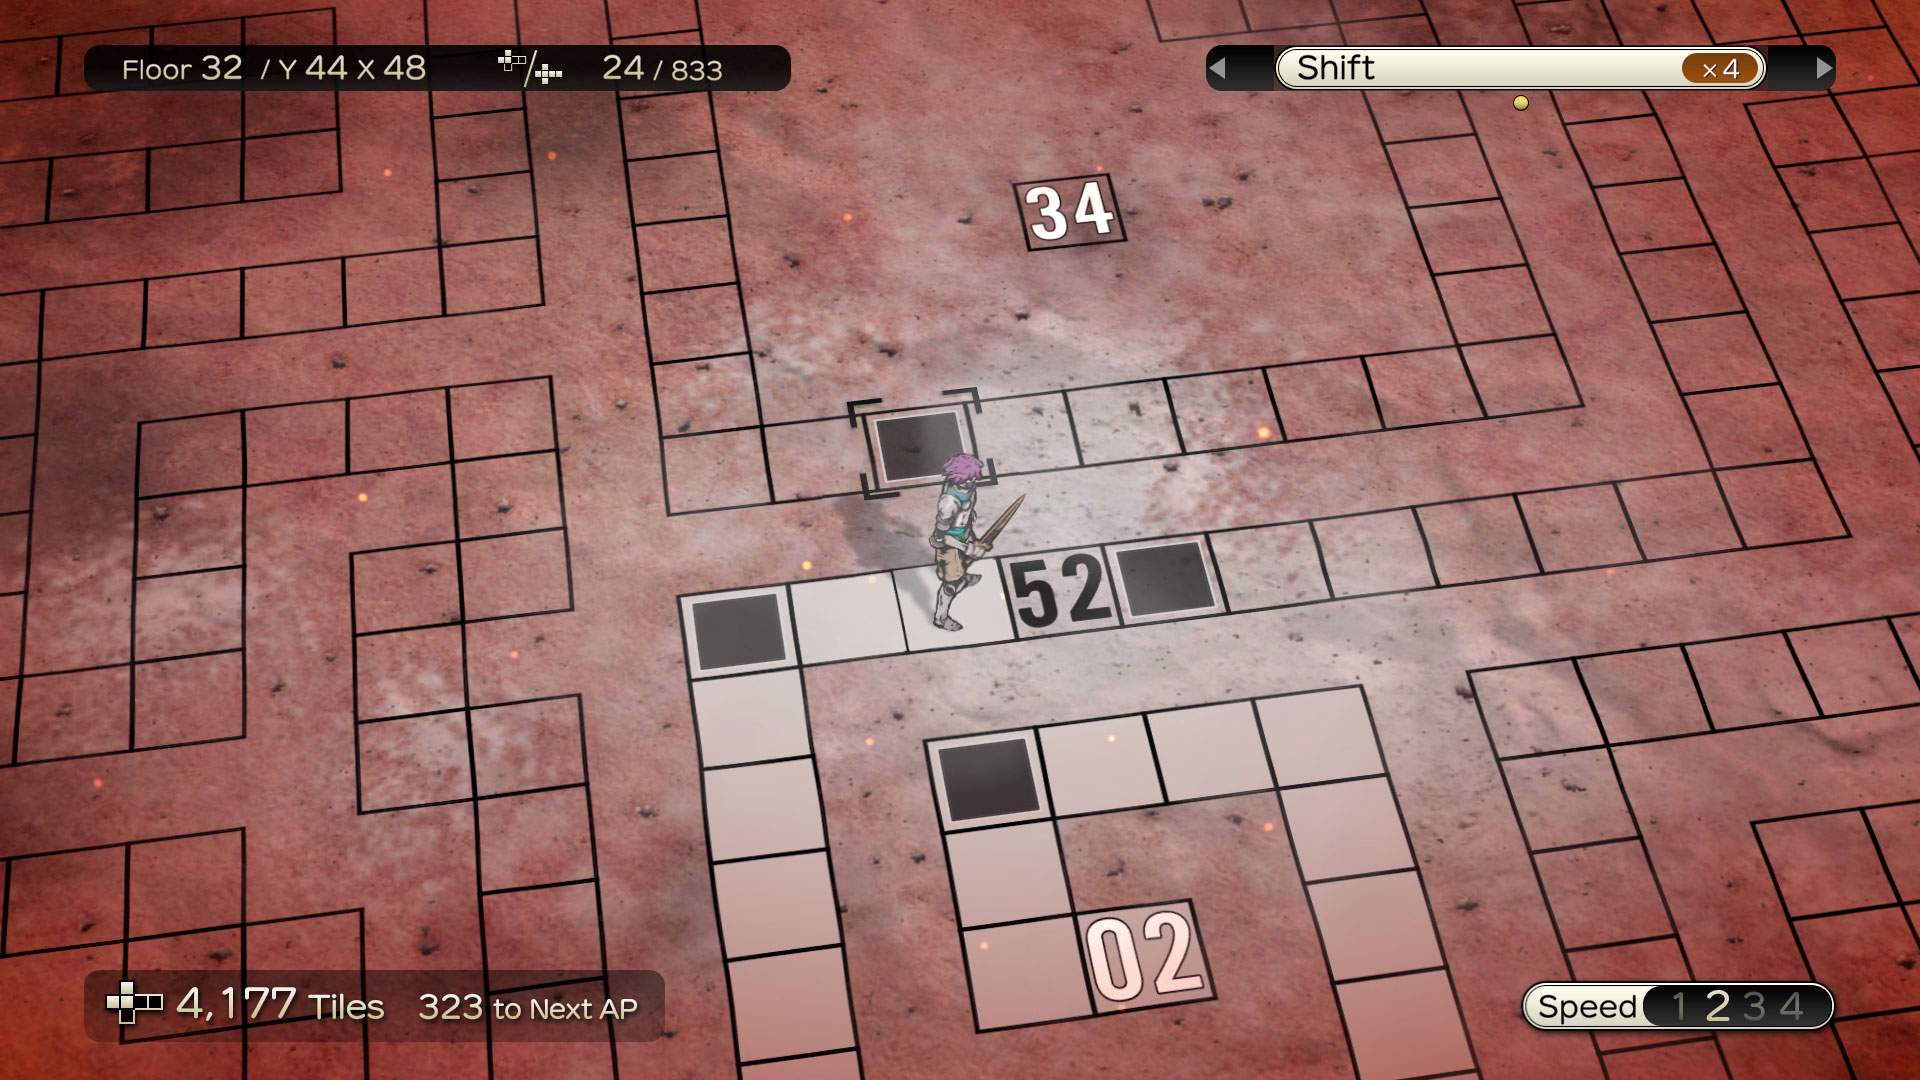 Image de gameplay montrant un personnage sur carte quadrillée. Une case dotée d'un carré noir est mise en avant.